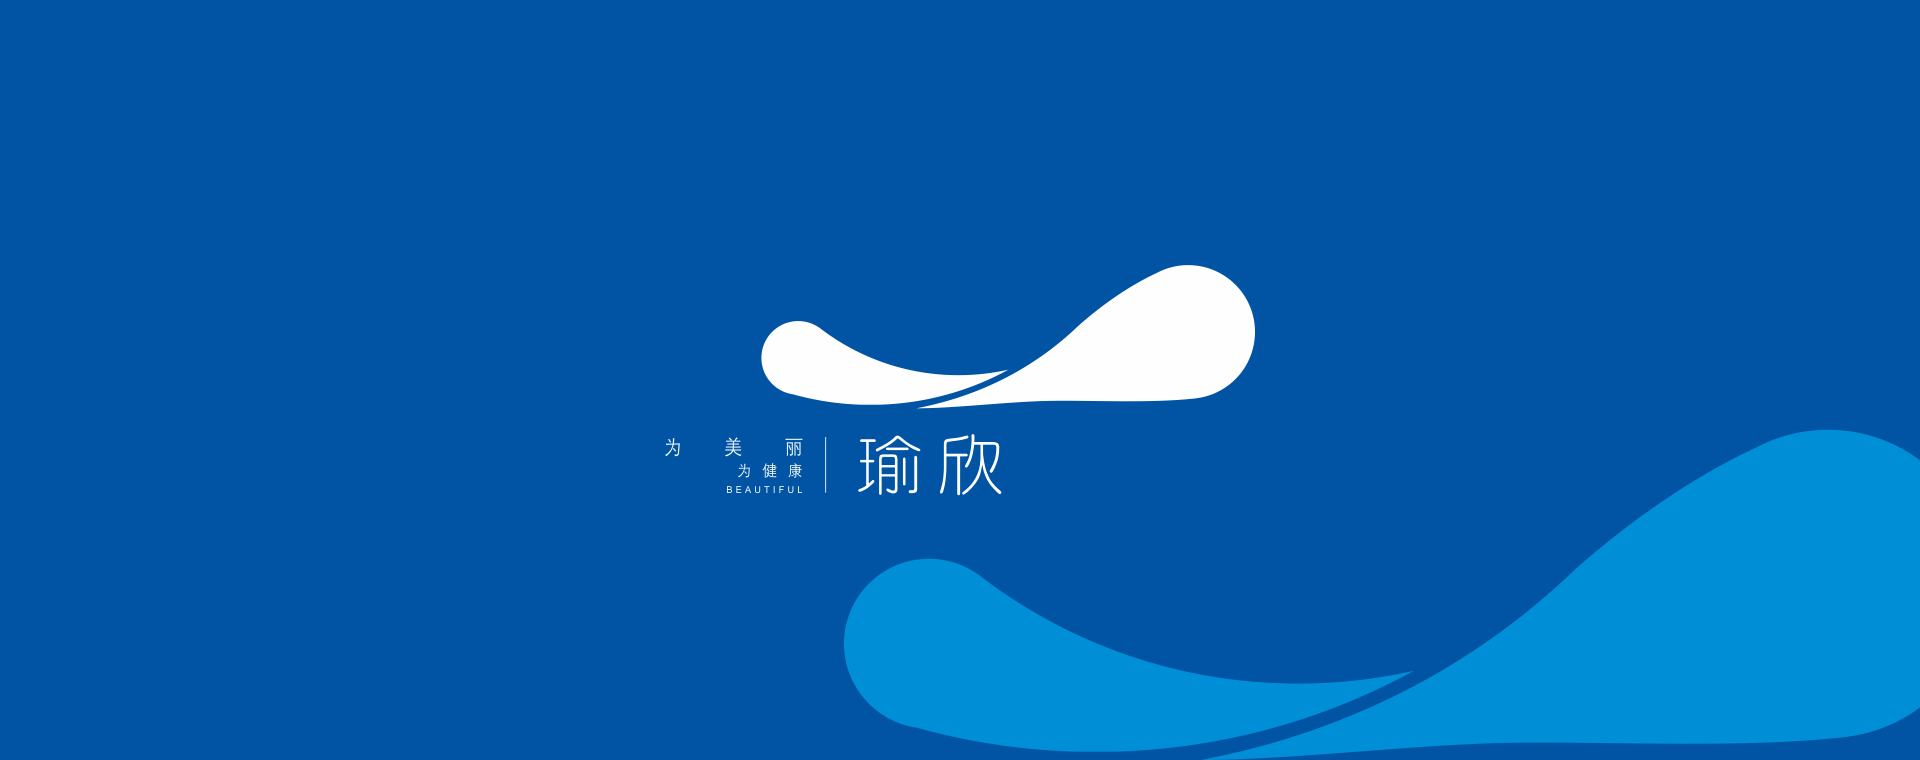 瑜欣logo設計